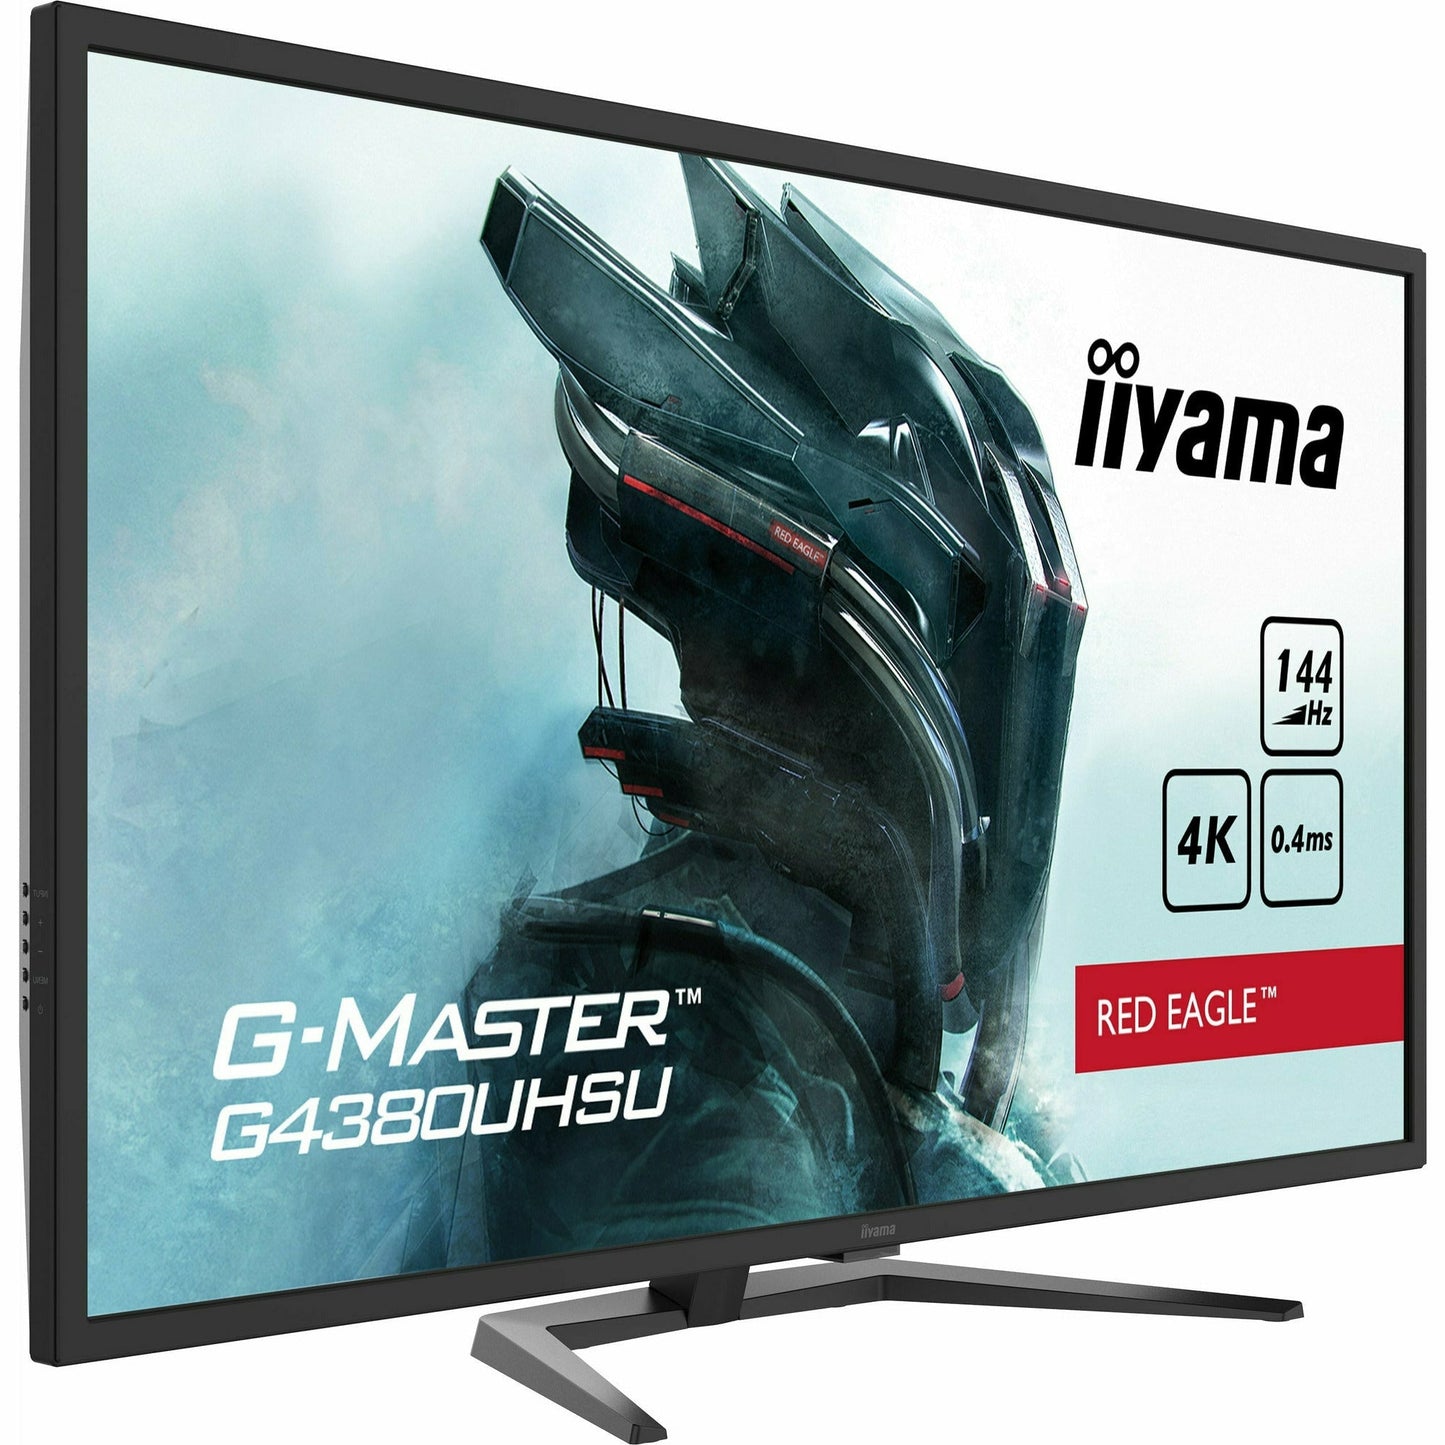 Dark Slate Gray iiyama G-Master G4380UHSU-B1 43" VA LCD Gaming Monitor